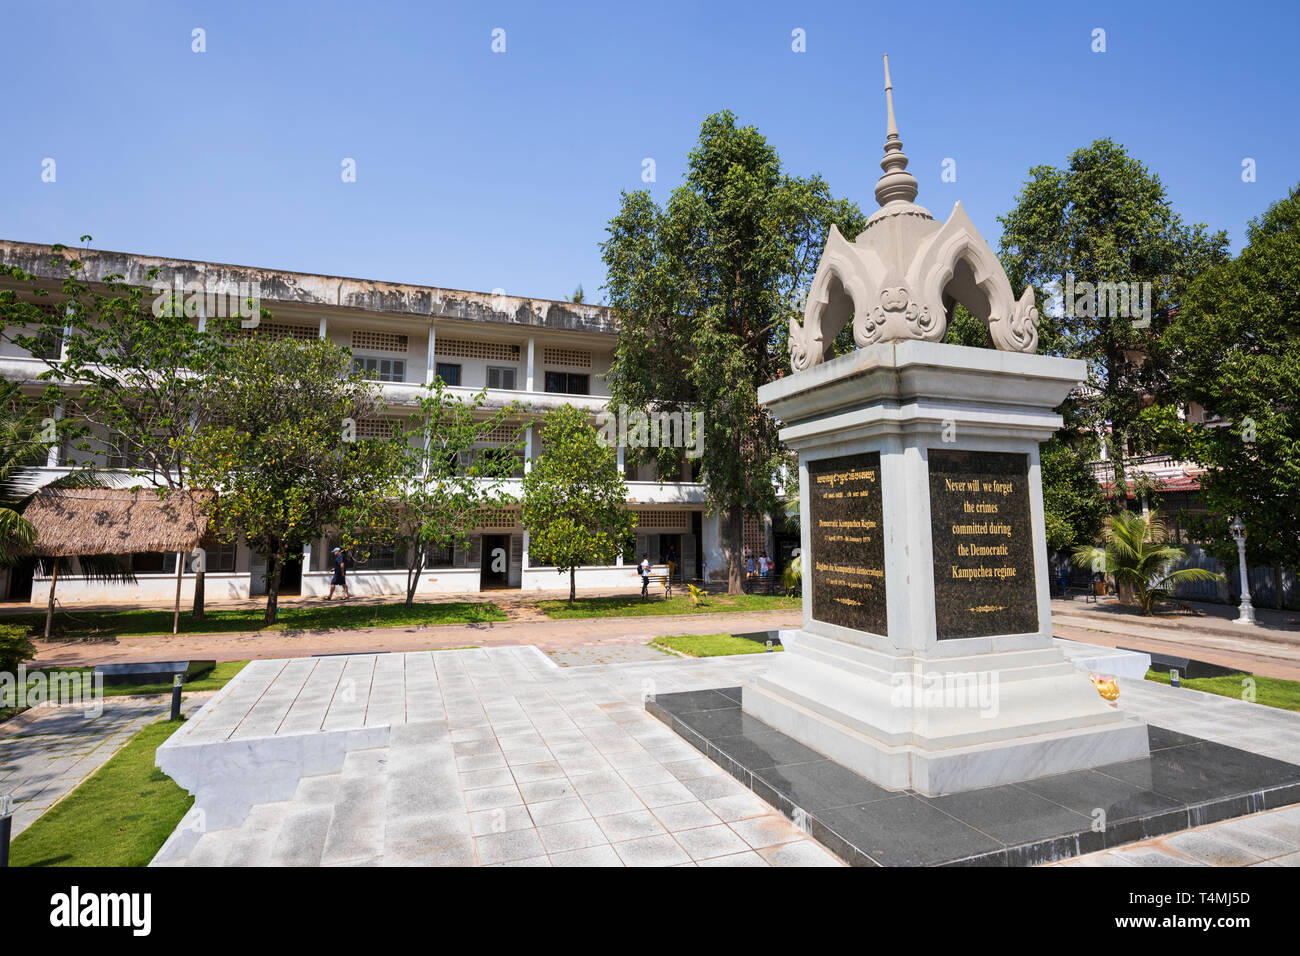 Musée du Génocide de Tuol Sleng (S-21) Prison de sécurité installé dans une ancienne école secondaire, Phnom Penh, Cambodge, Asie du Sud, Asie Banque D'Images